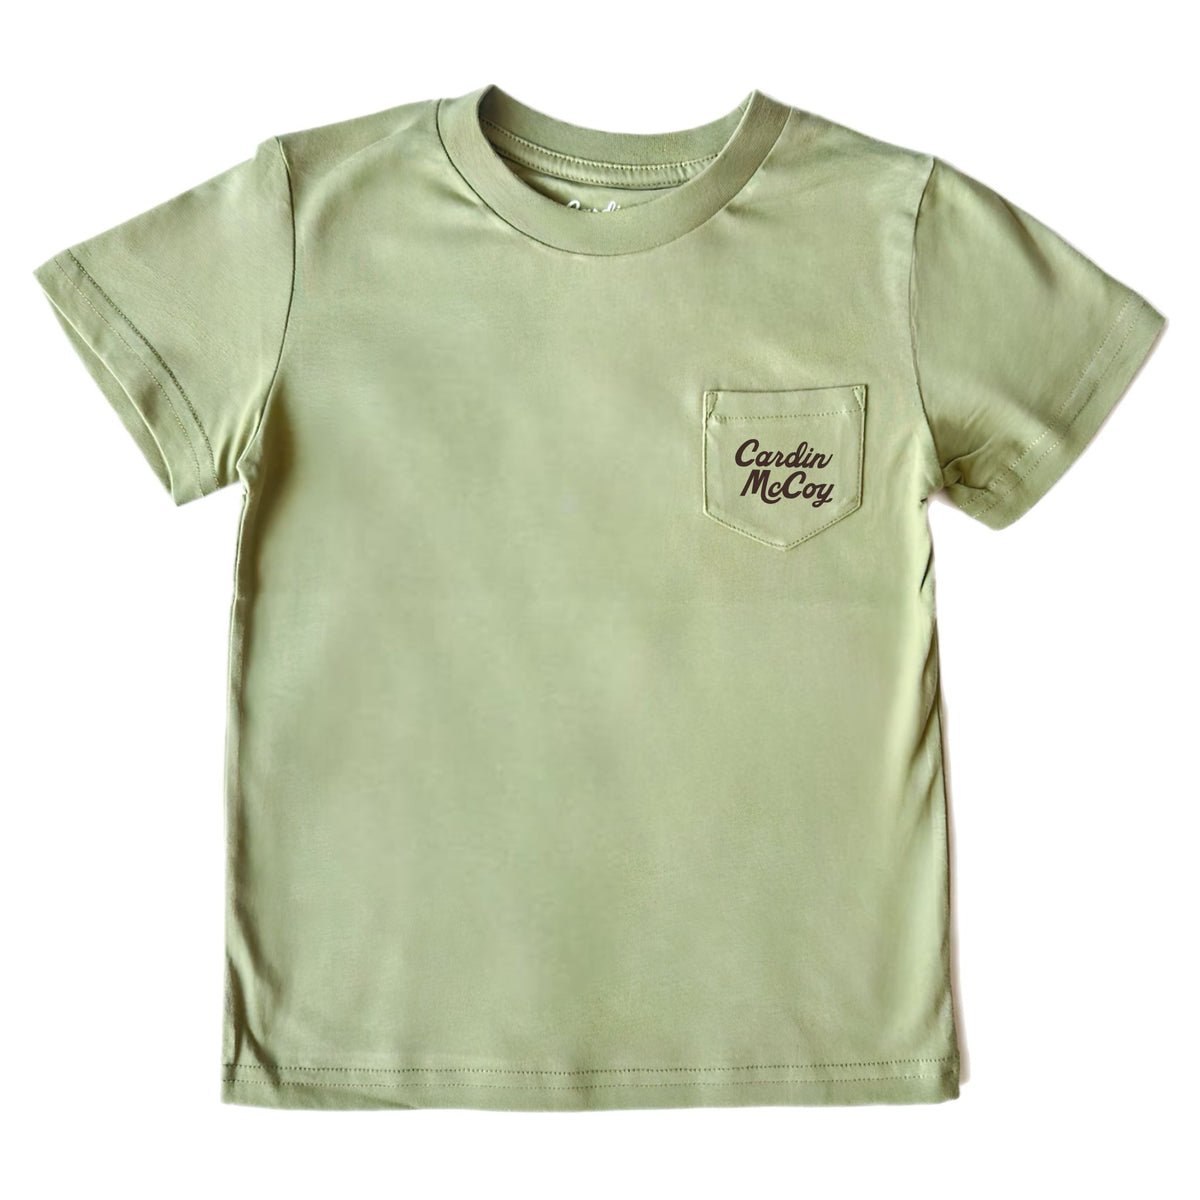 Boys' God's Country Short-Sleeve Tee Short Sleeve T-Shirt Cardin McCoy 